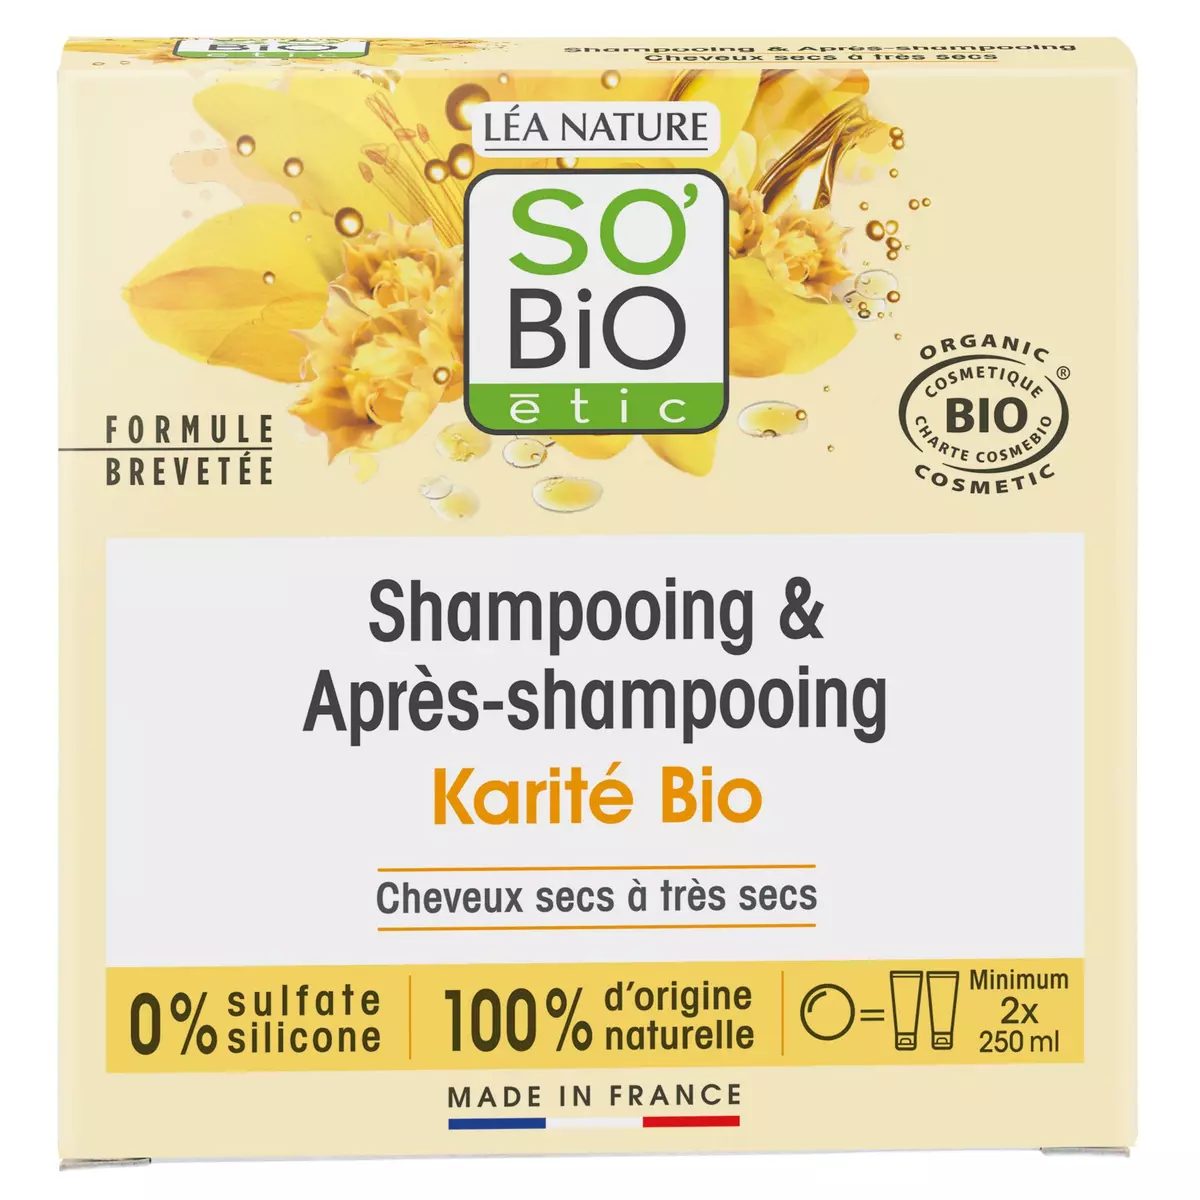 SO BIO ETIC Shampooing et après-shampooing solide karité cheveux secs à très secs 65g